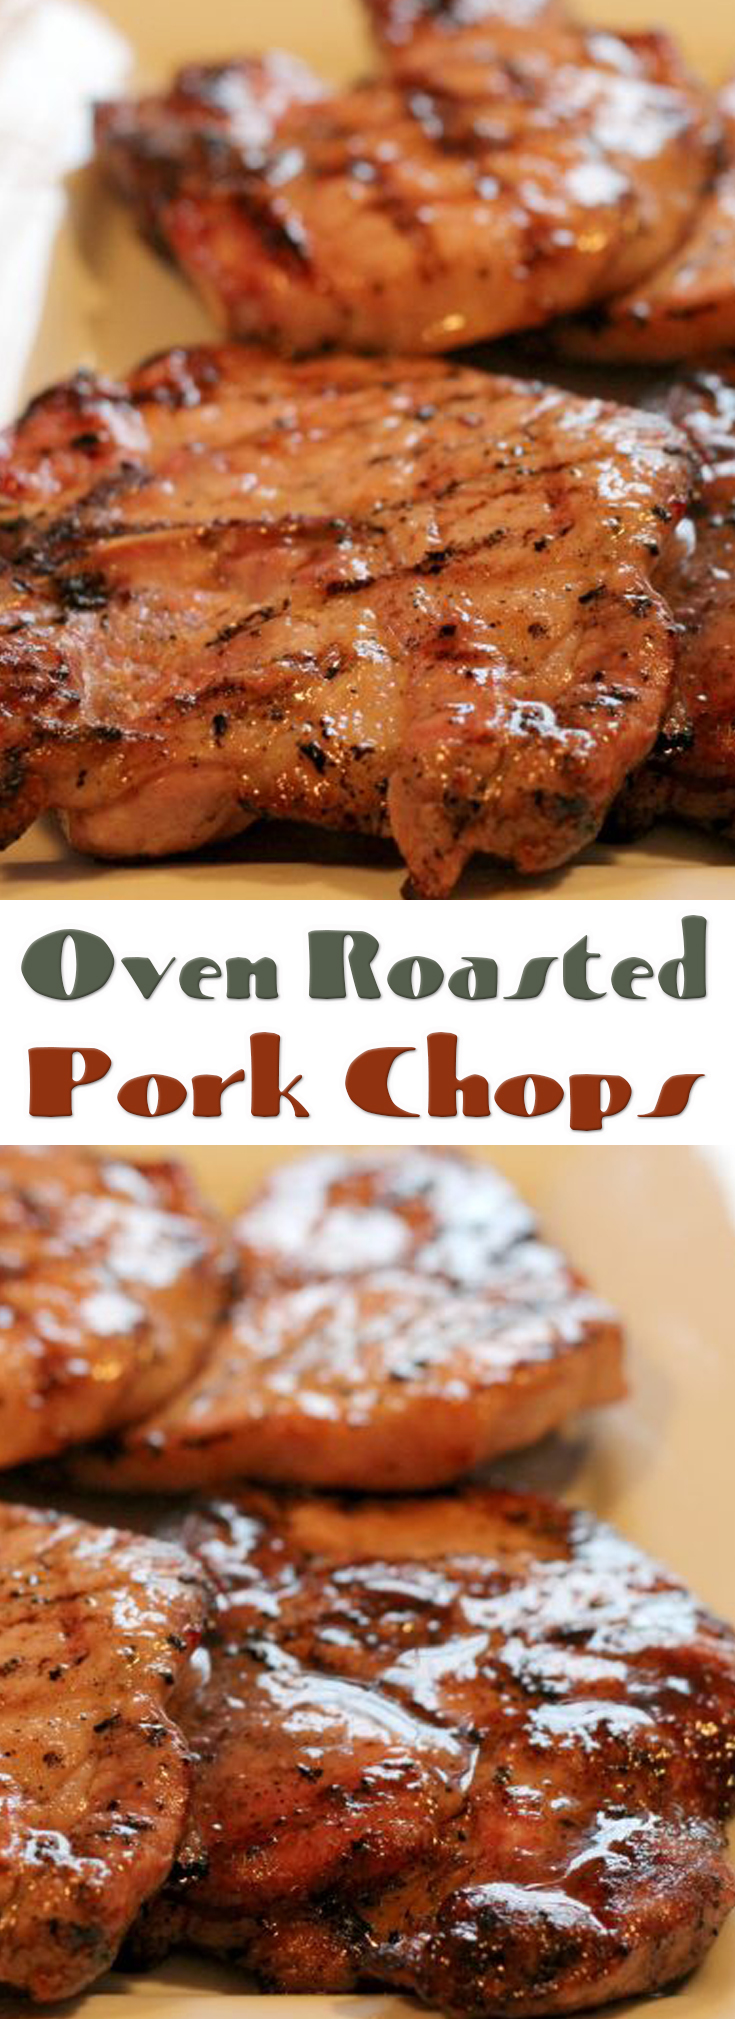 Oven Roasted Pork Chops